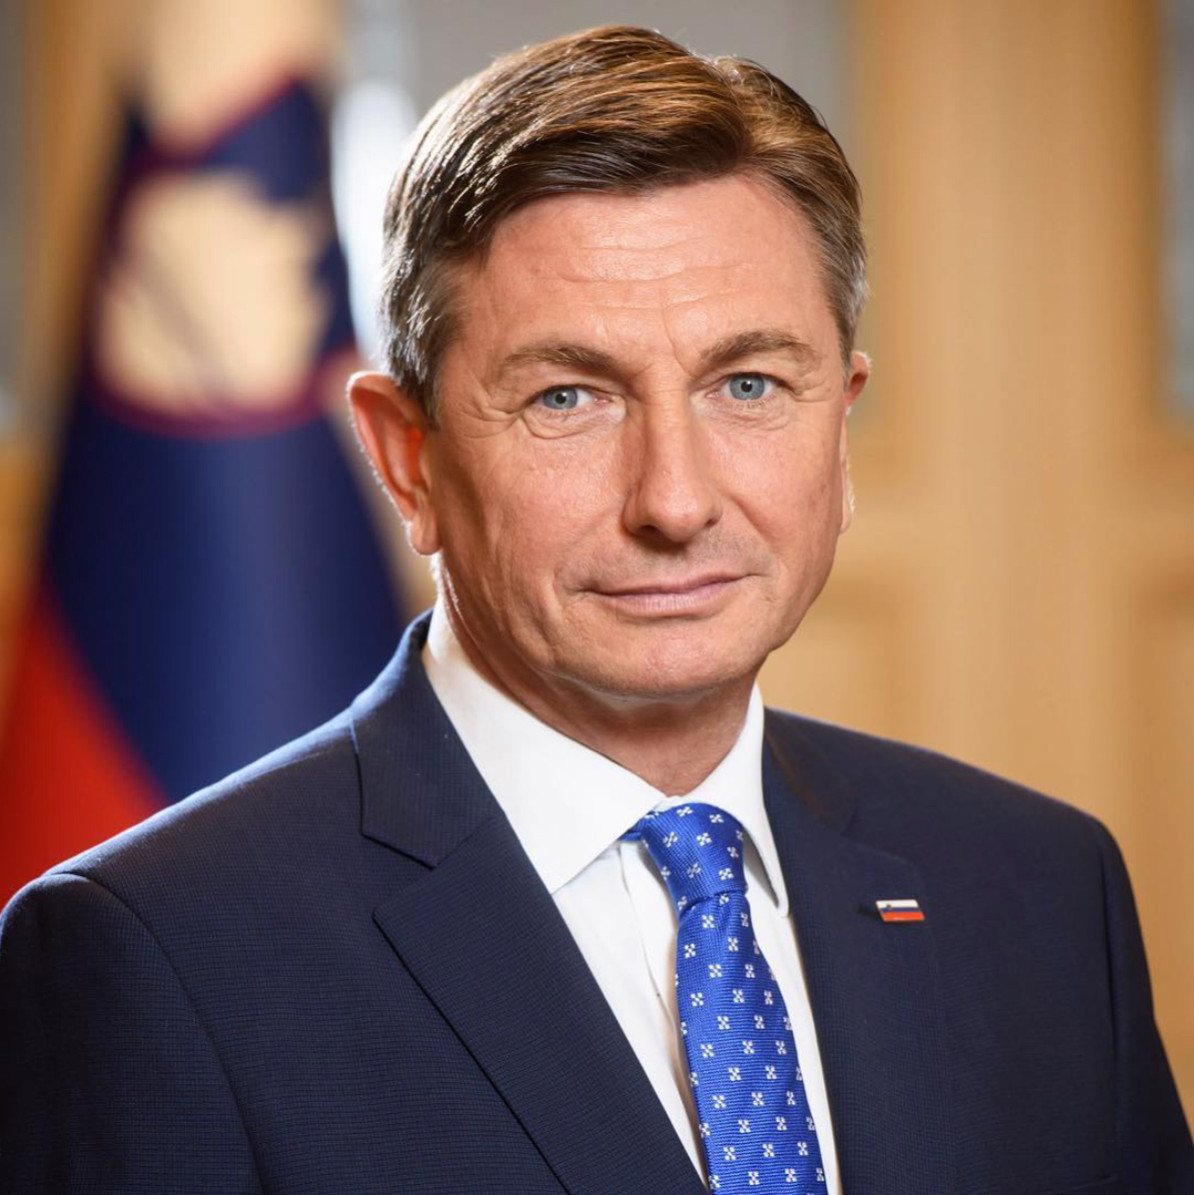 Letošnji srebrni jubilej pod častnim pokroviteljstvom predsednika Republike Slovenije